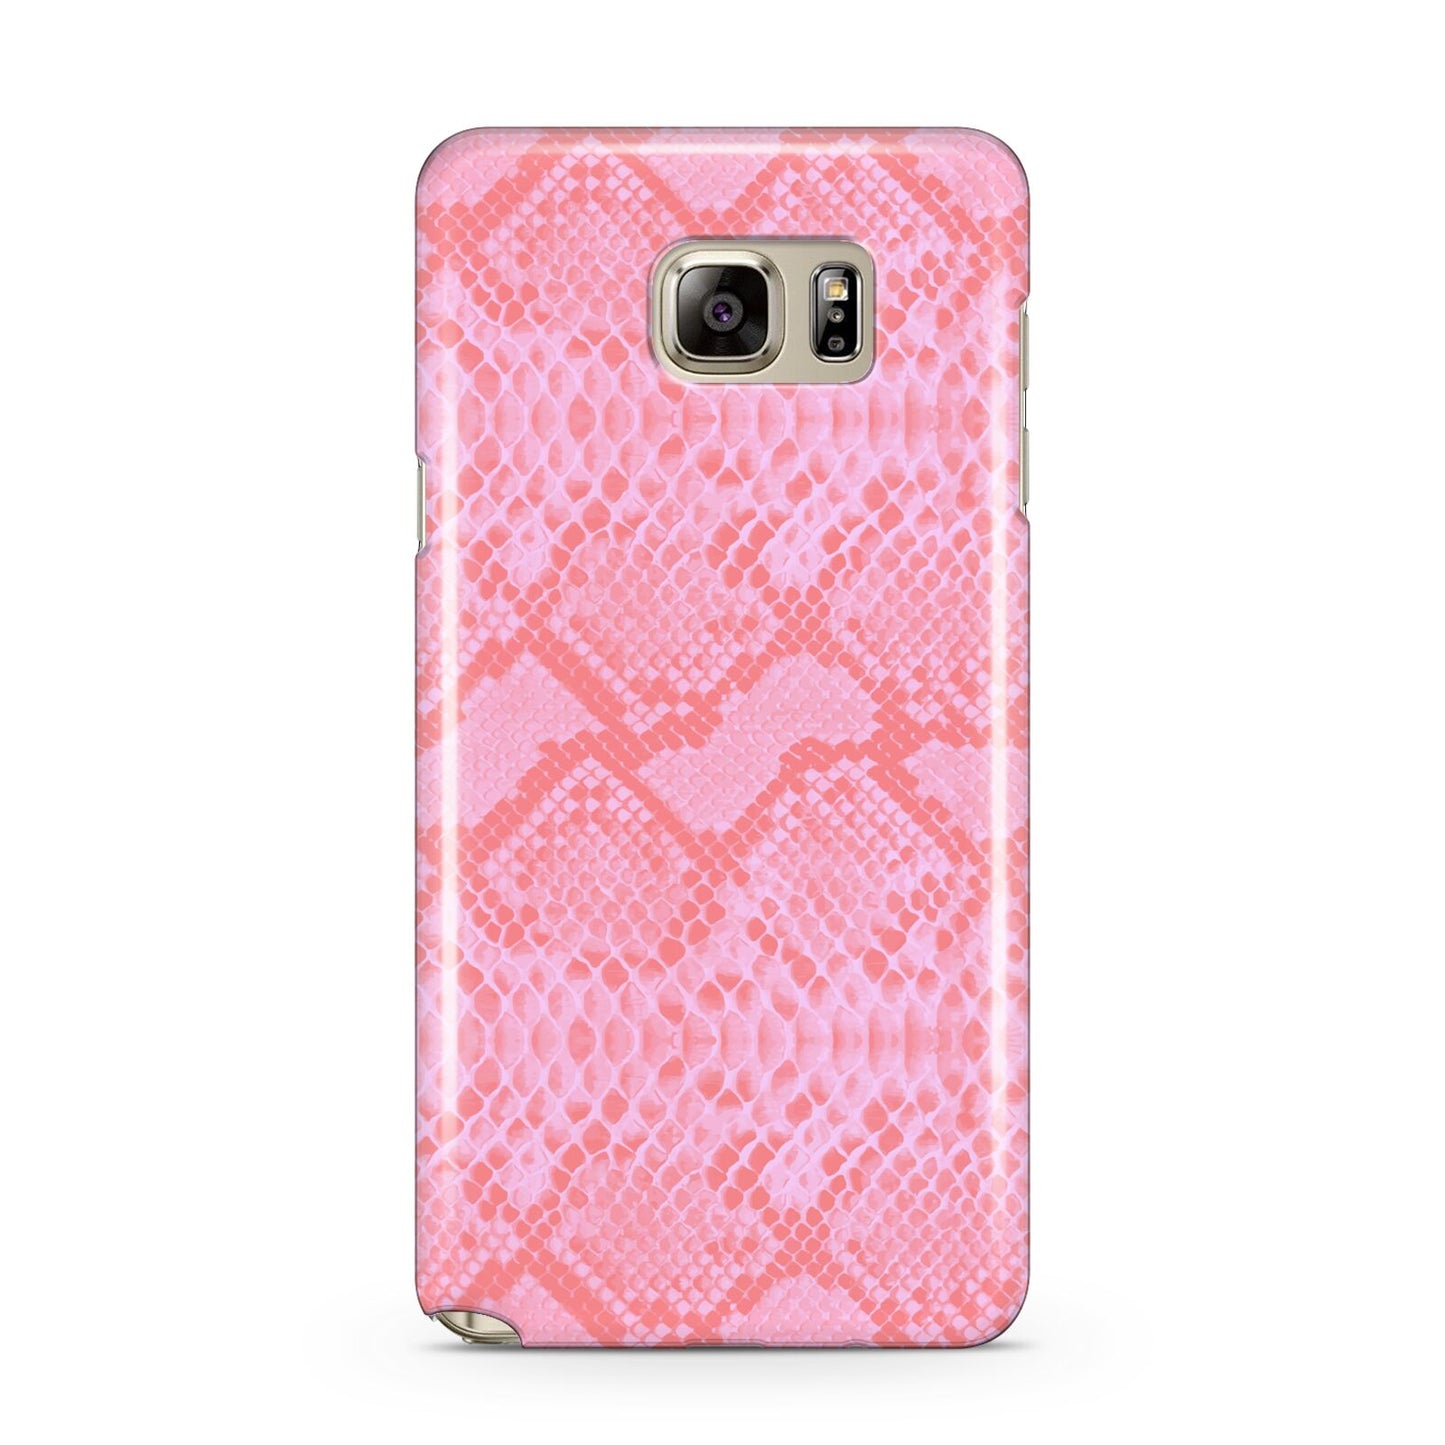 Pink Snakeskin Samsung Galaxy Note 5 Case